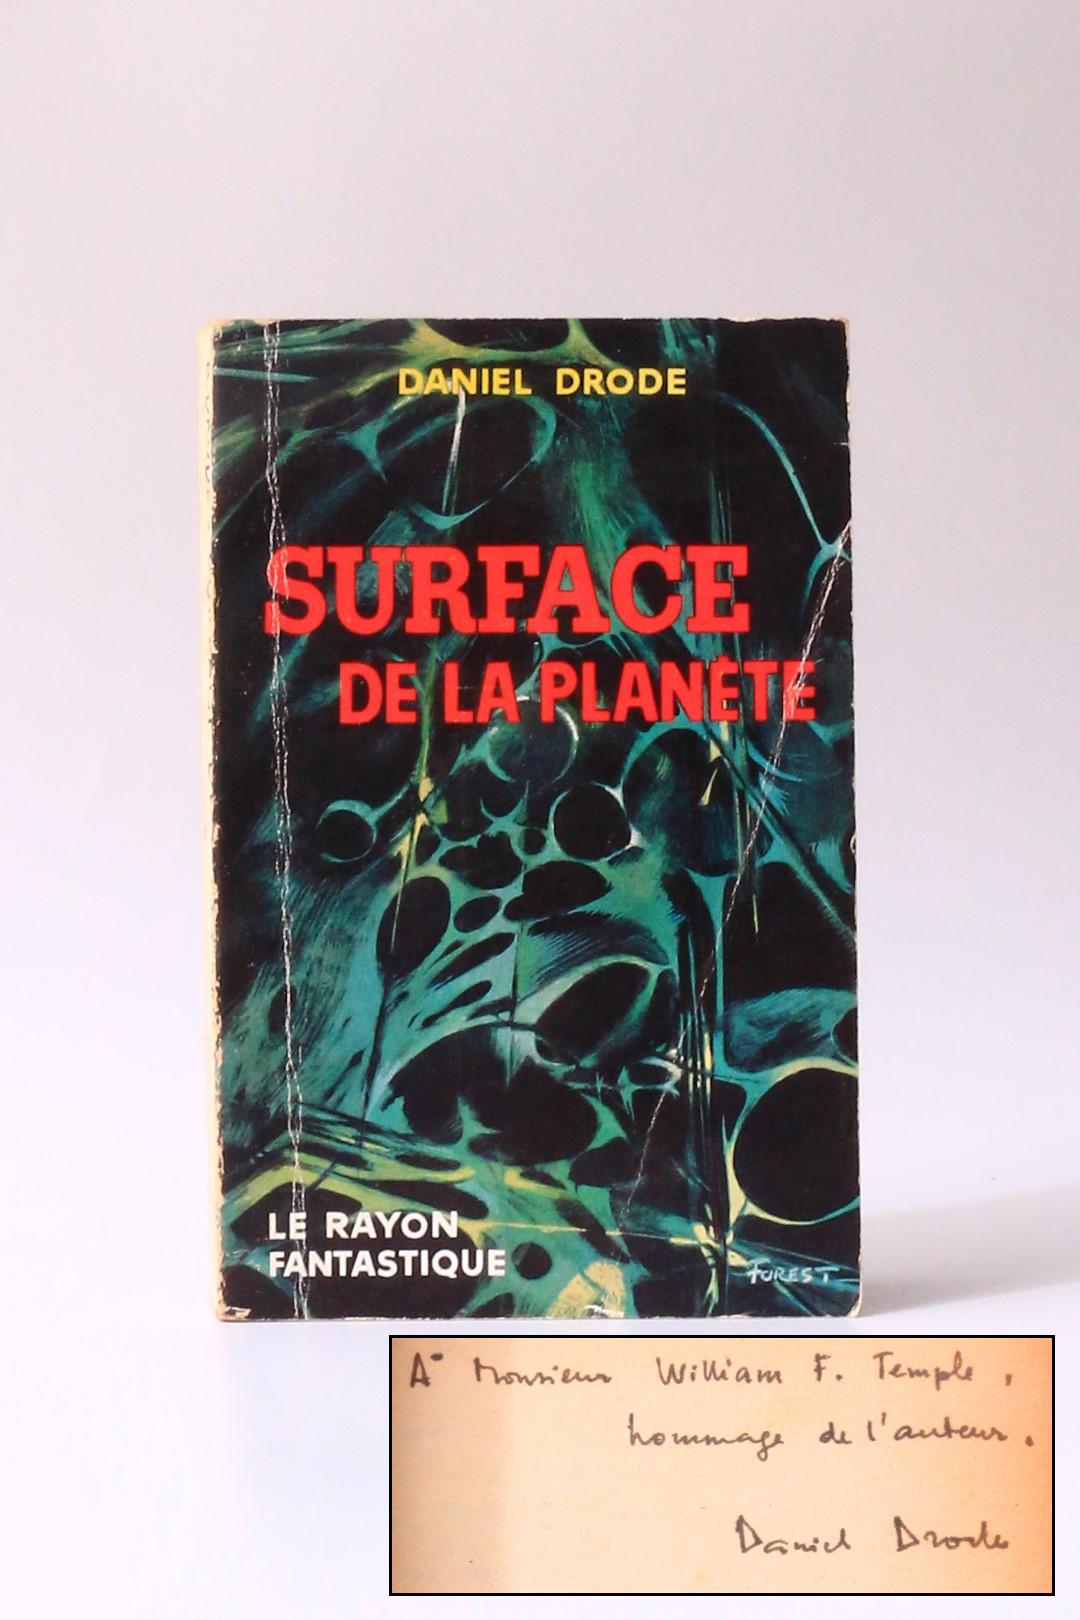 Daniel Drode - Surface de la Planete - Hachette, 1959, Signed First Edition.